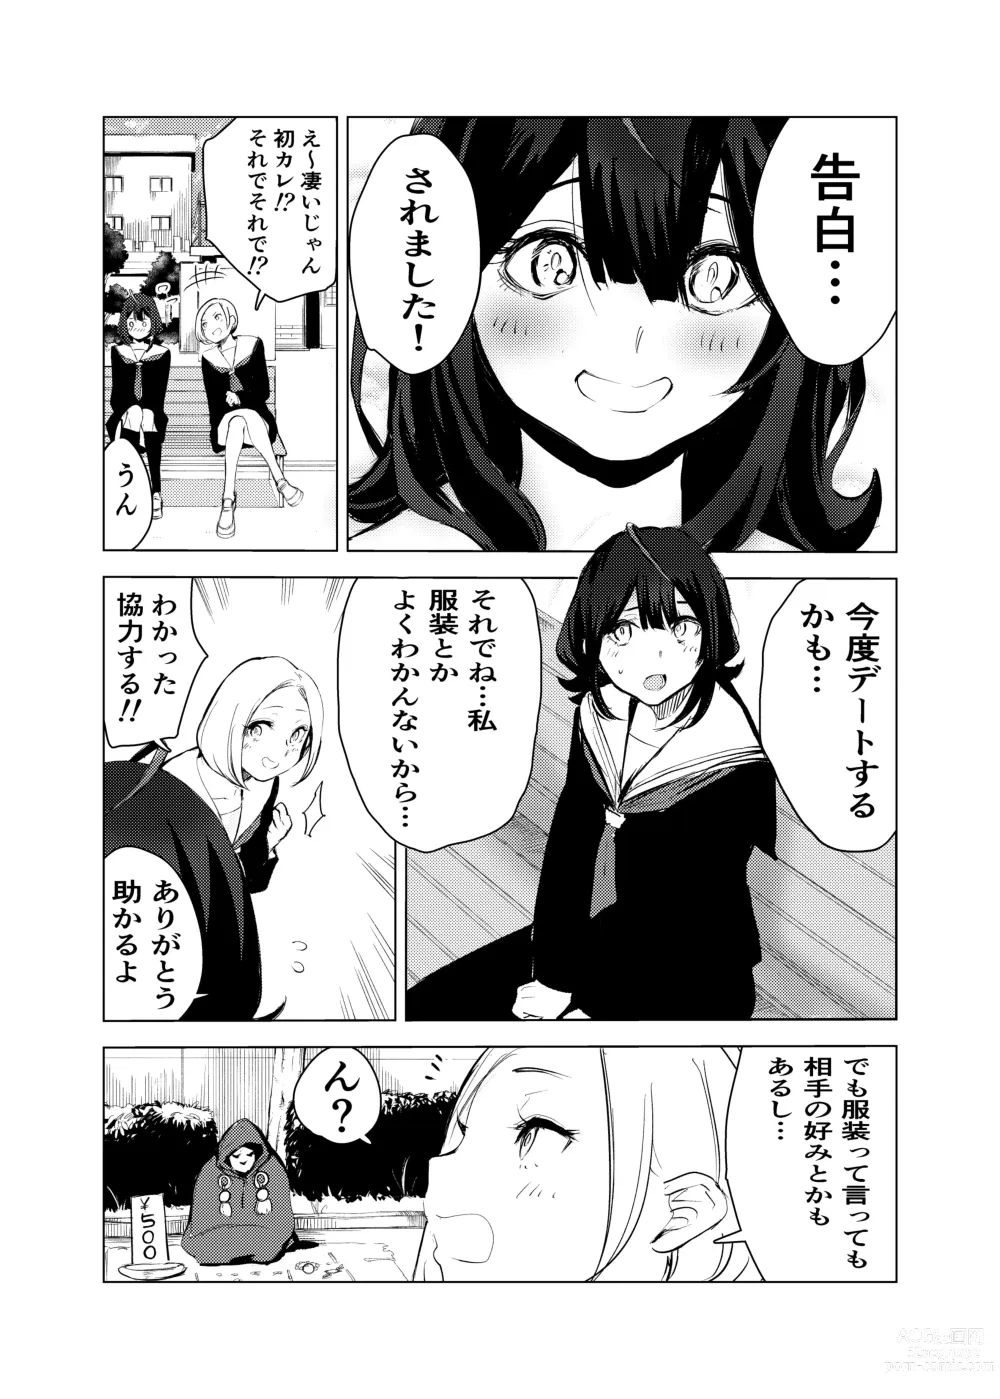 Page 3 of doujinshi Neko no Ongaeshi